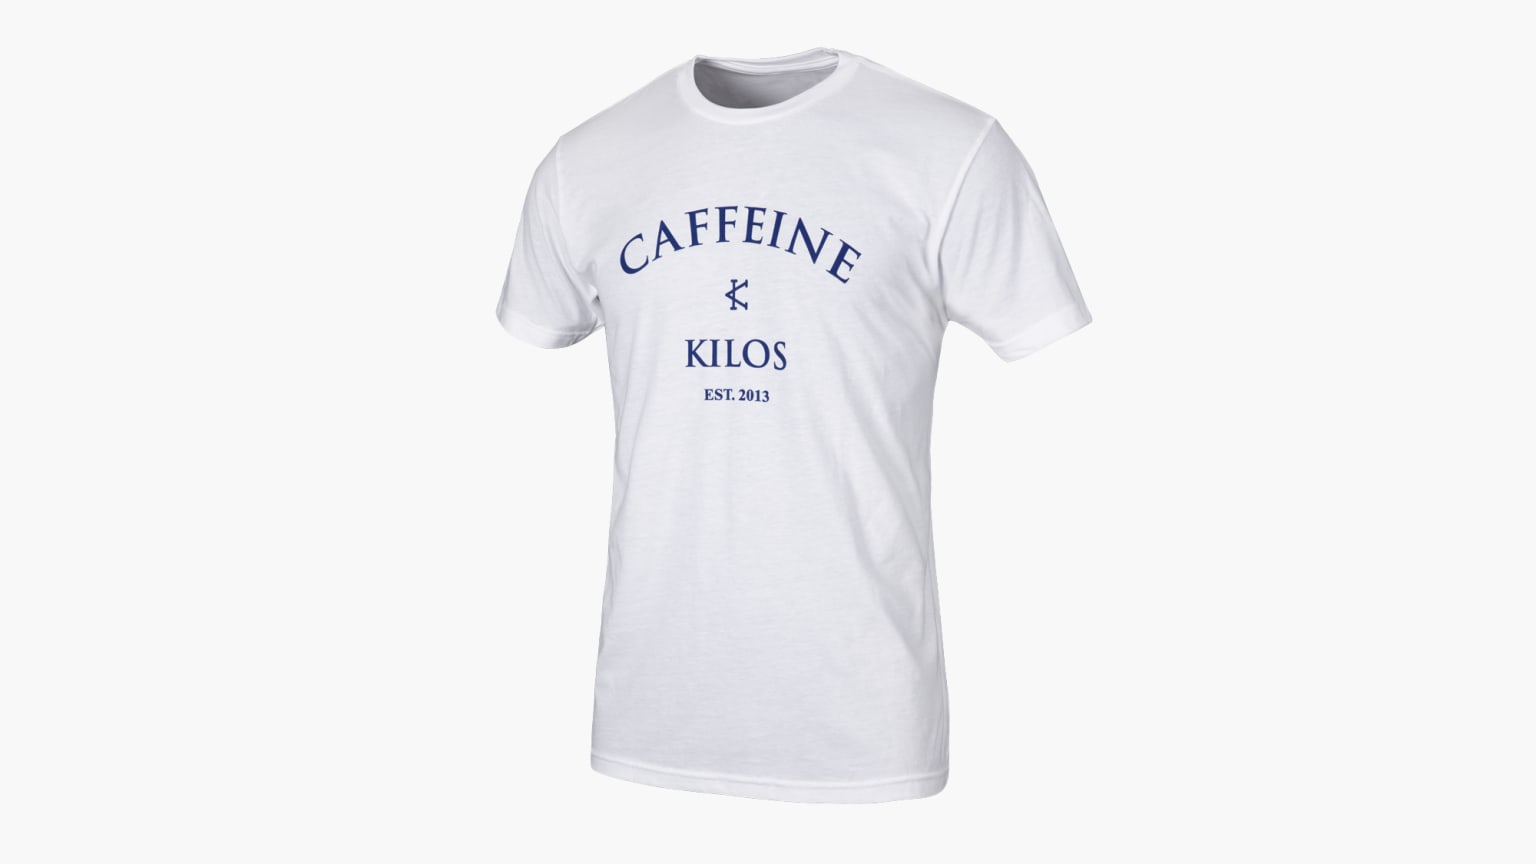 Caffeine & Kilos Logo Shirt - White / Navy | Rogue Fitness